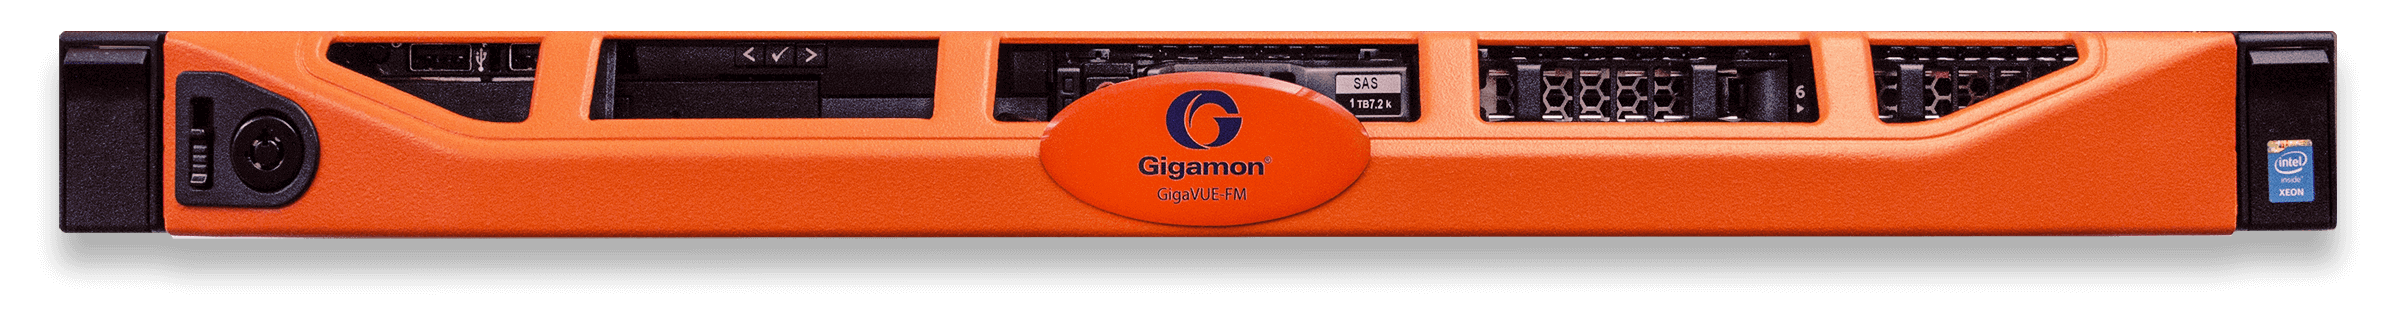 GigaVUE-FM